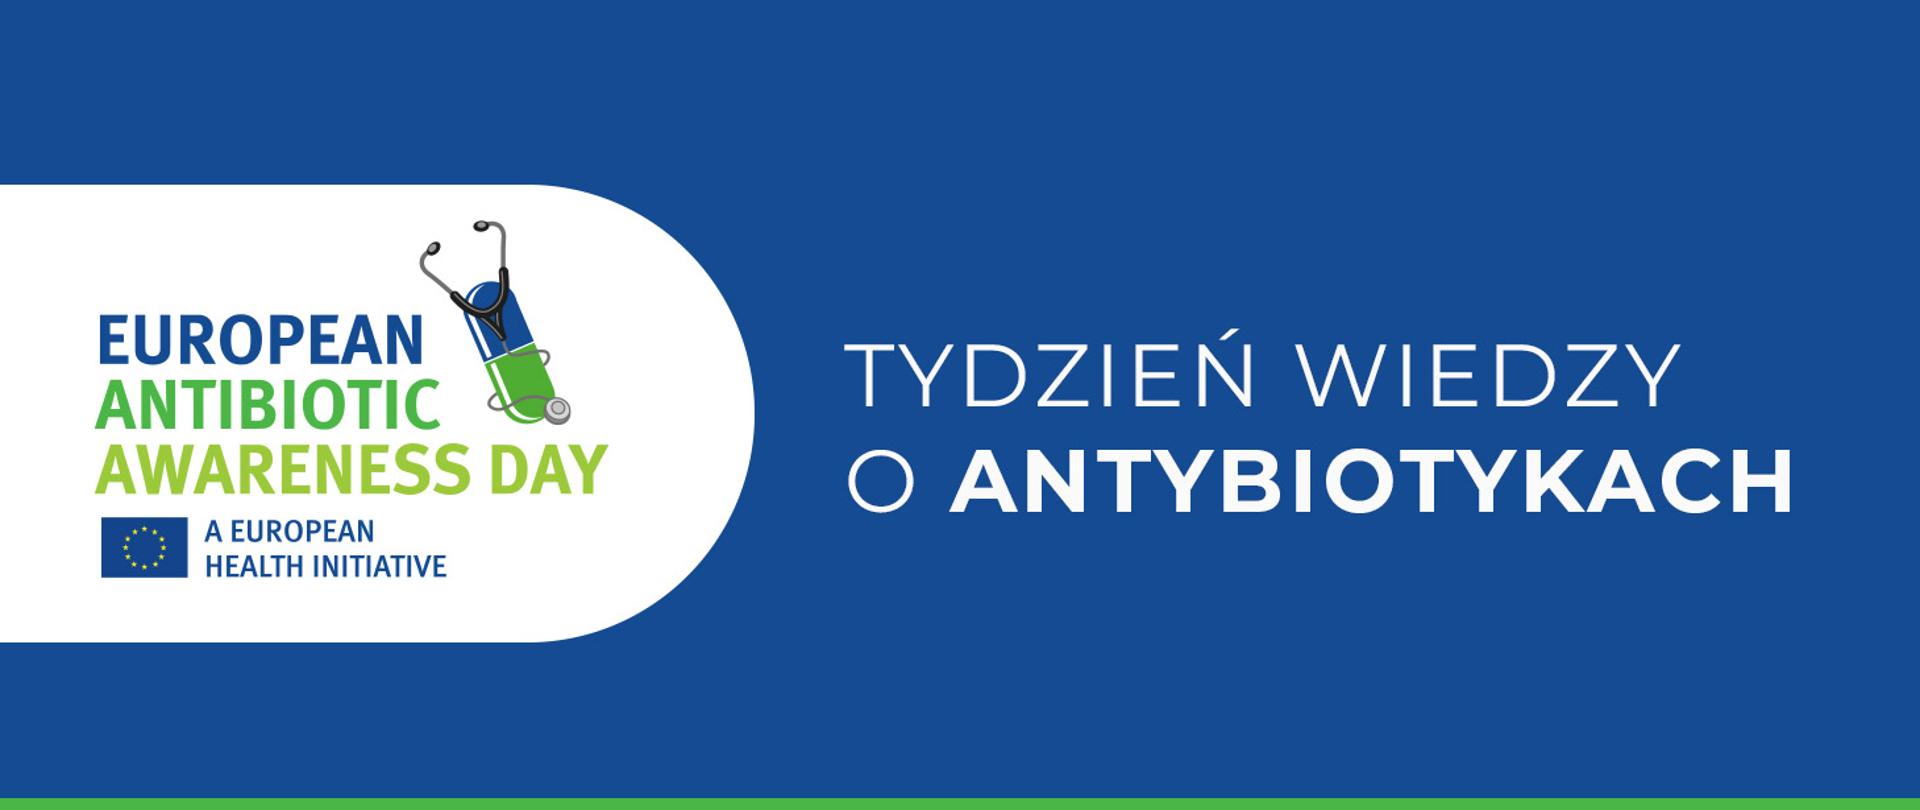 Baner informacyjny z logo Europejskiego Dnia Wiedzy o Antybiotykach i napisem: Tydzień wiedzy o antybiotykach